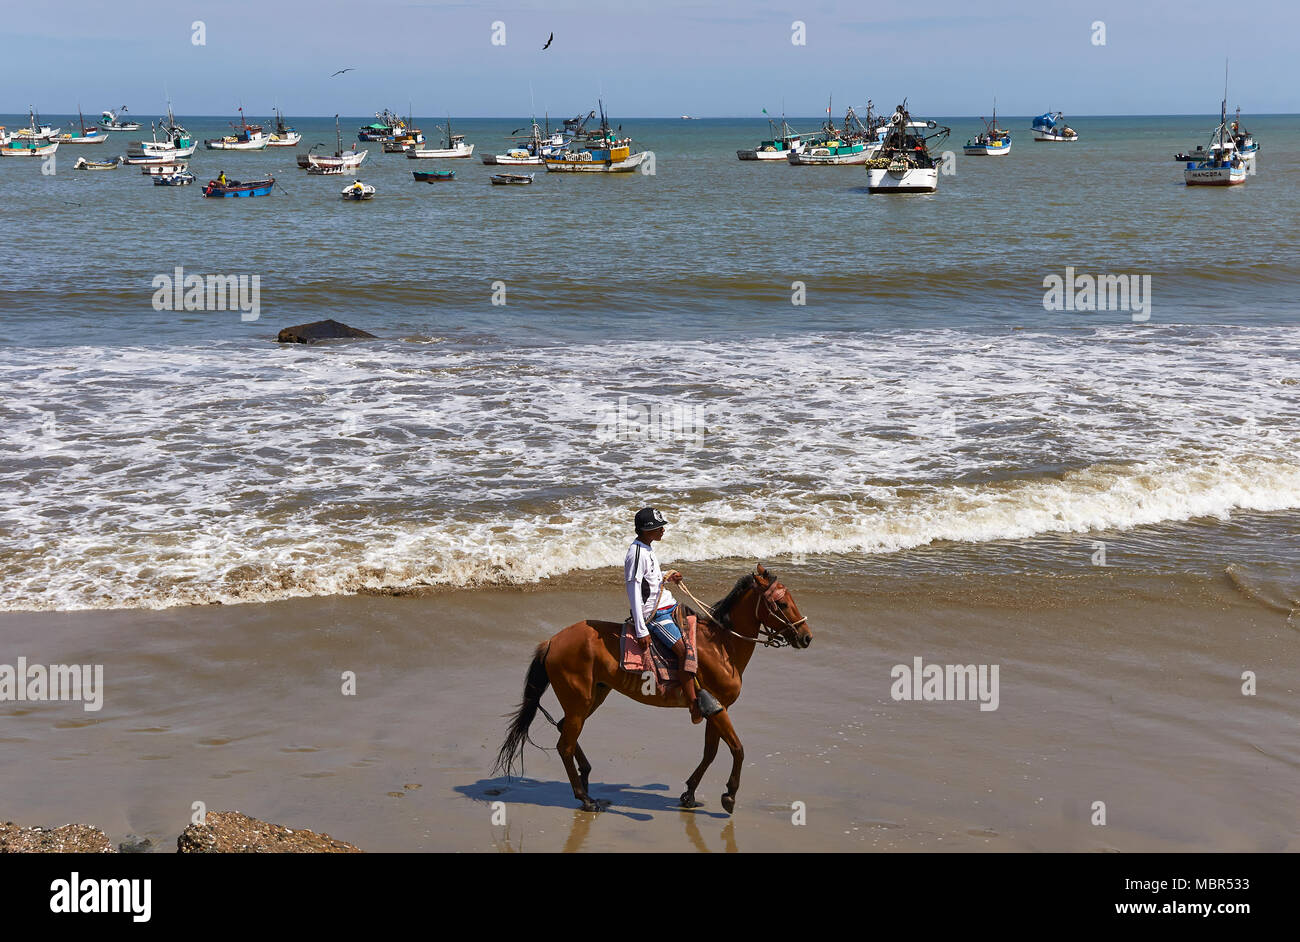 Une personne montant un cheval alezan sur la plage de Mancora, un petit village de pêcheurs situé dans le nord-ouest du Pérou, en Amérique du Sud. Banque D'Images